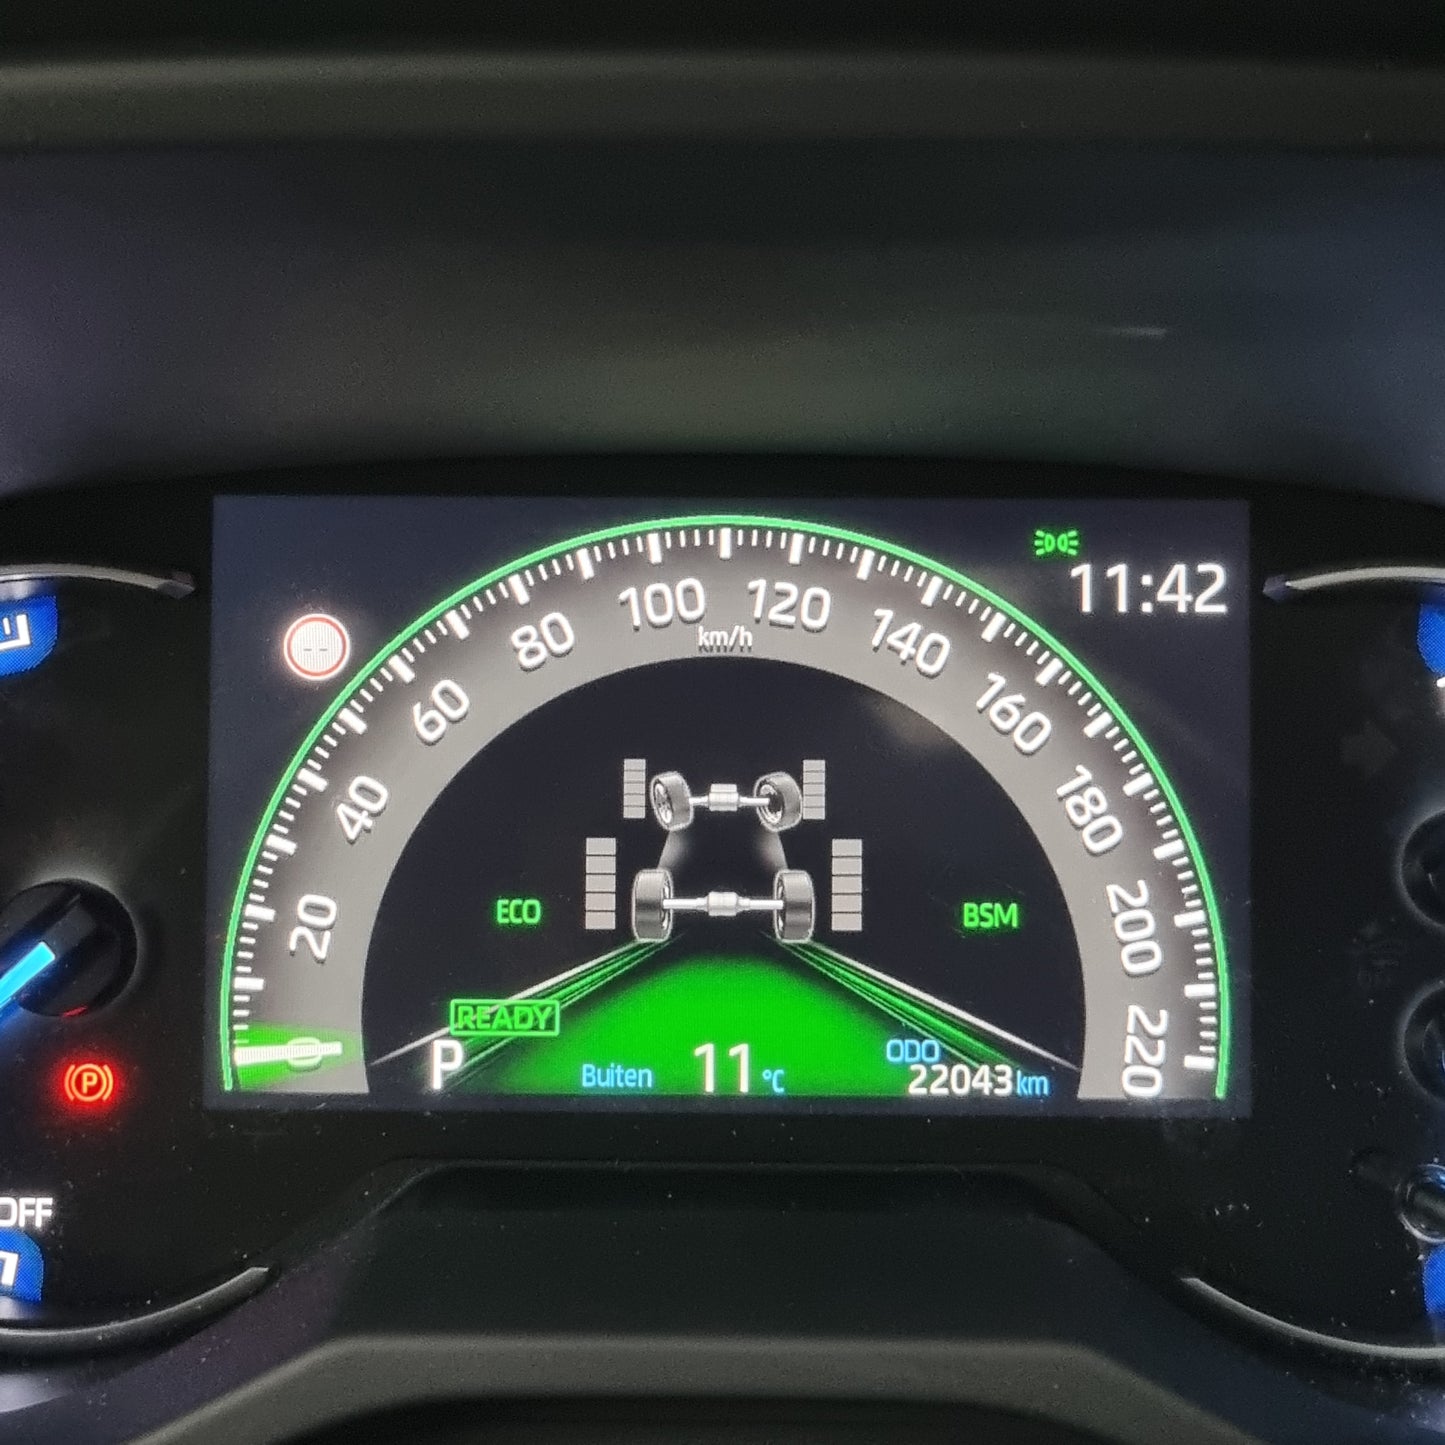 Toyota RAV4 Hybride 2.5 01/2020 22.043km